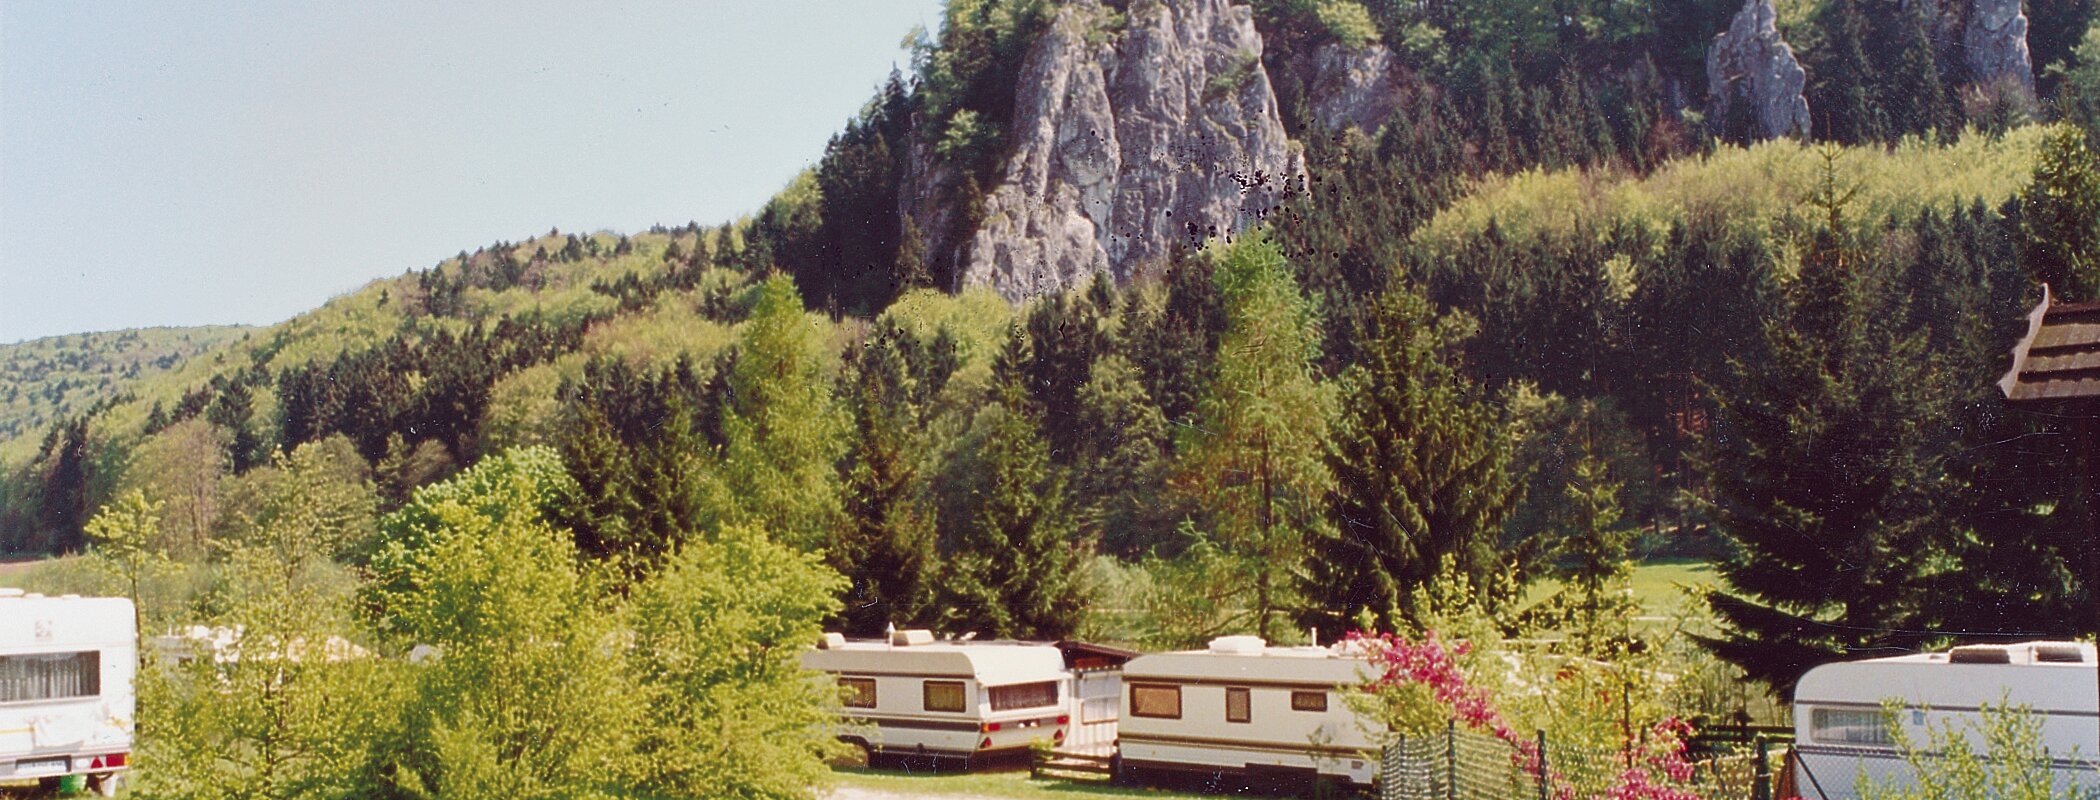 campingplatz_kastlhof_riedenburg.jpg